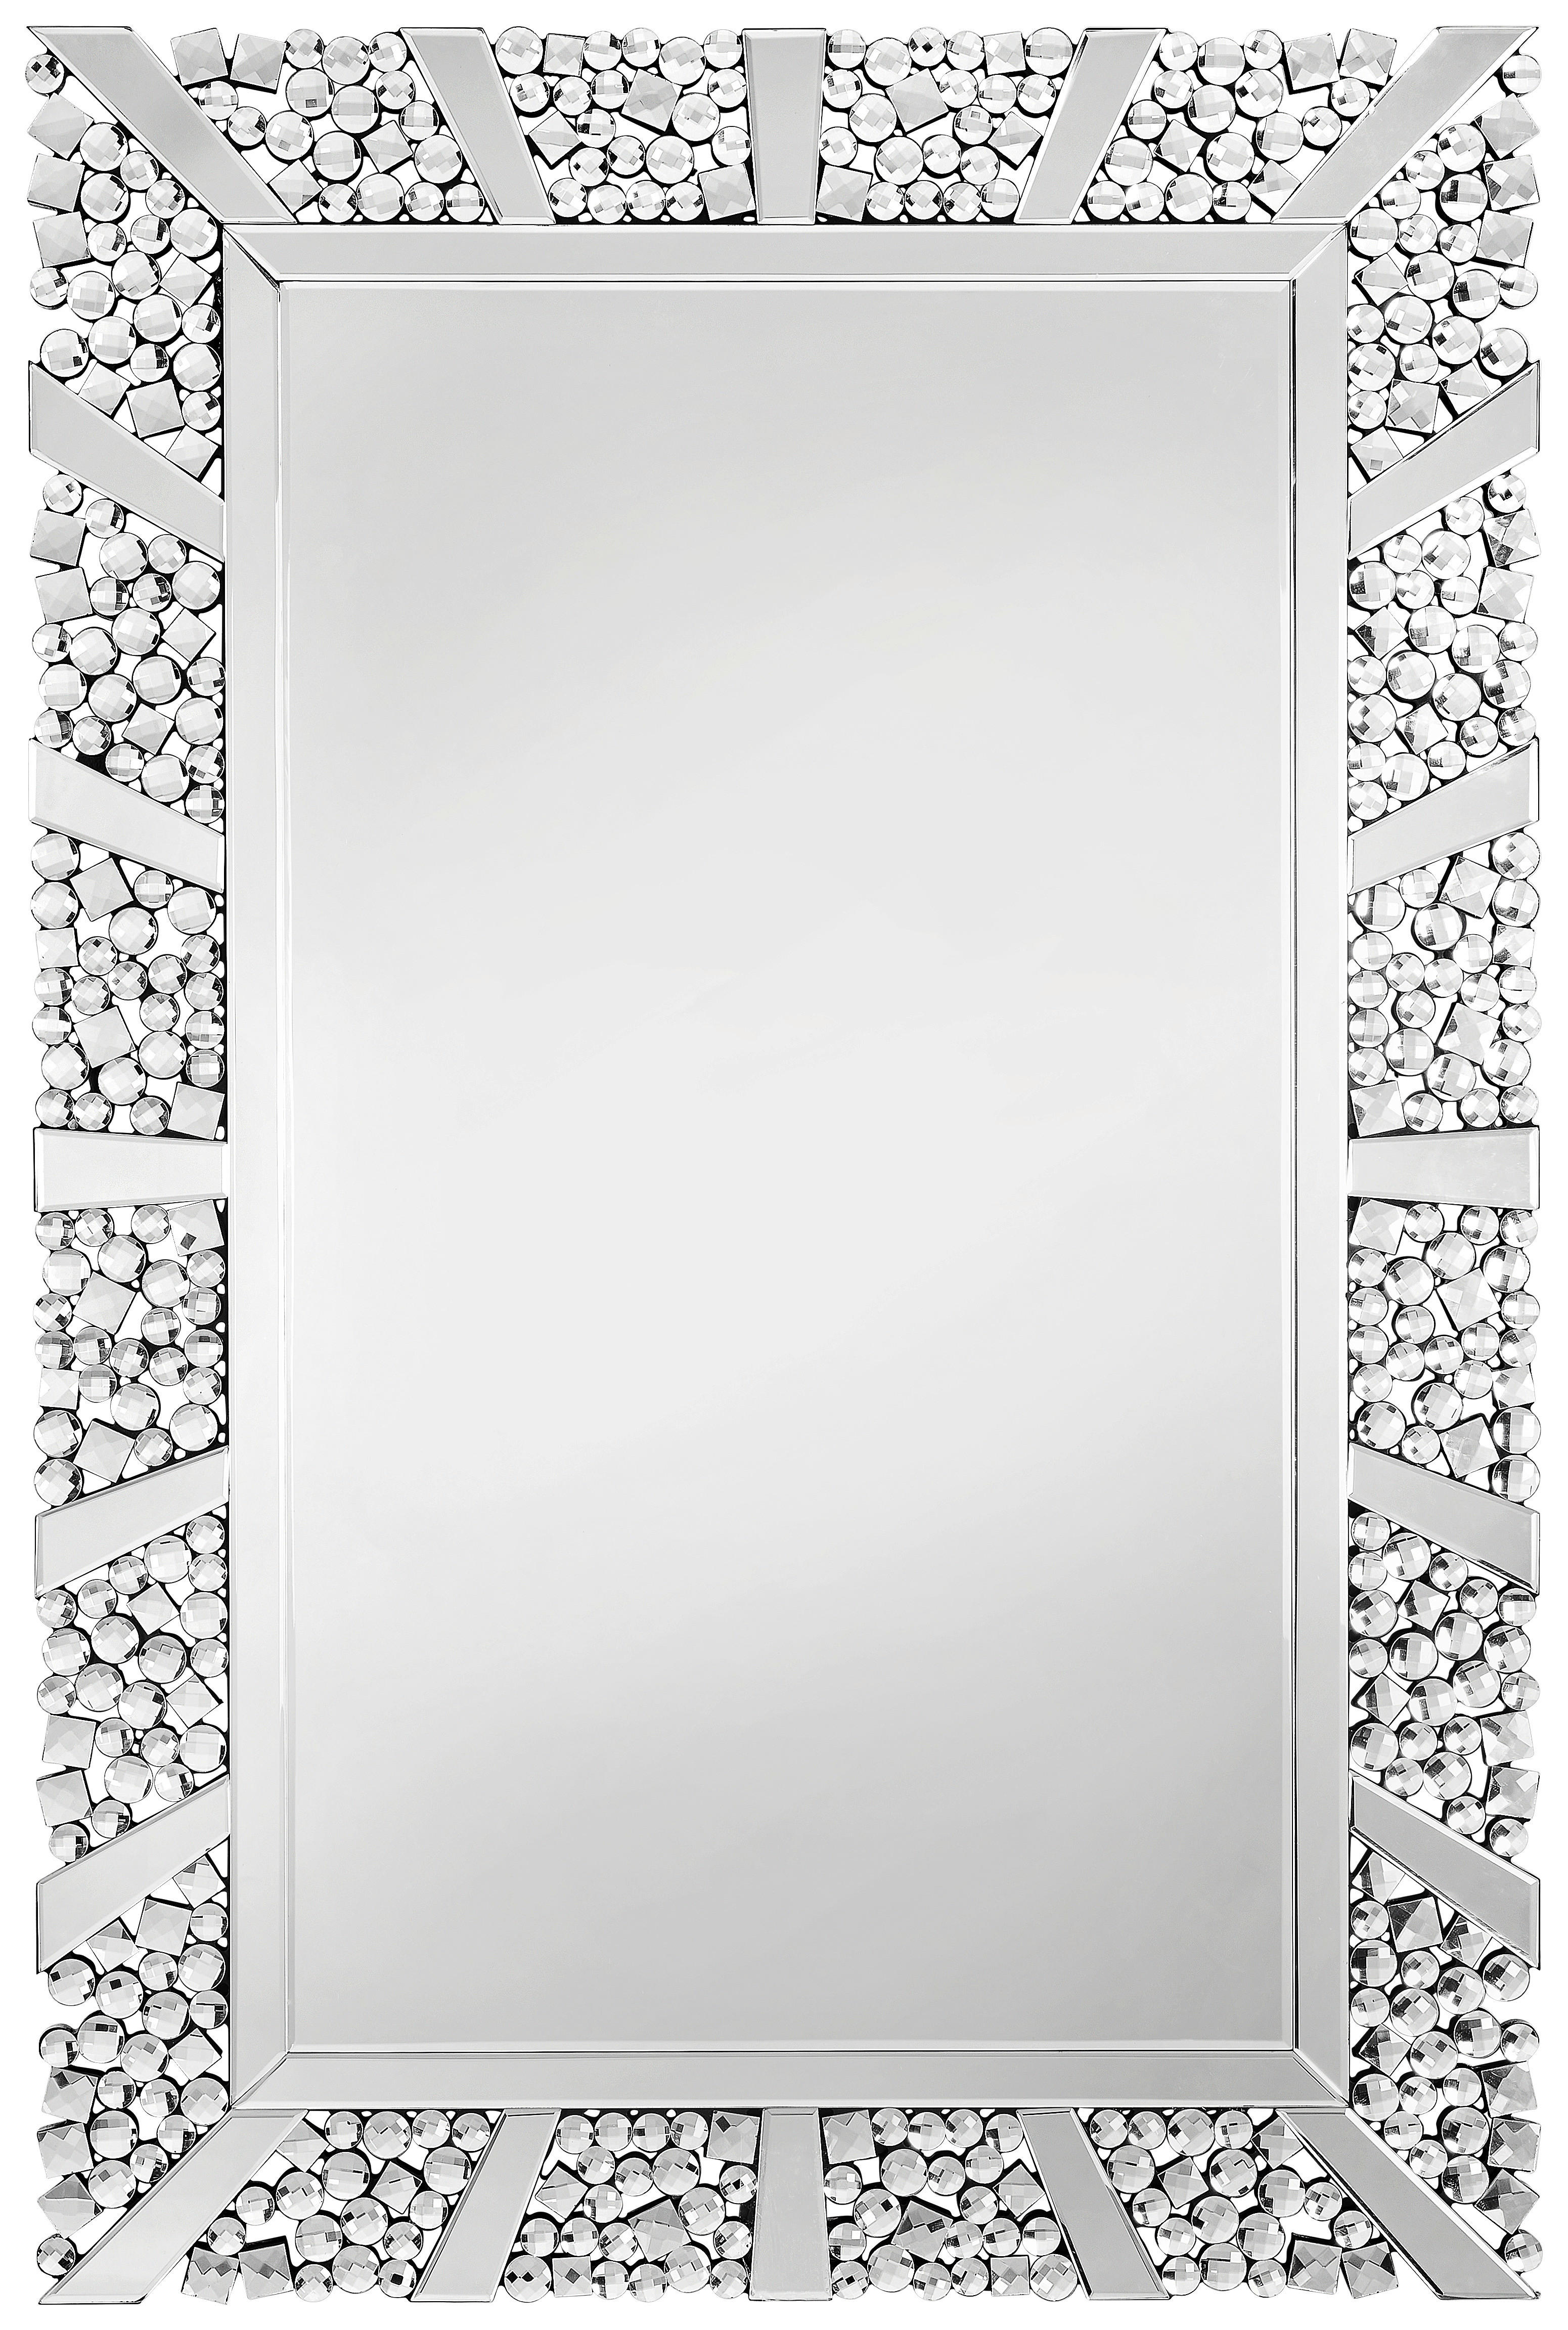 Xora NÁSTĚNNÉ ZRCADLO 120/80/2 cm - barvy stříbra